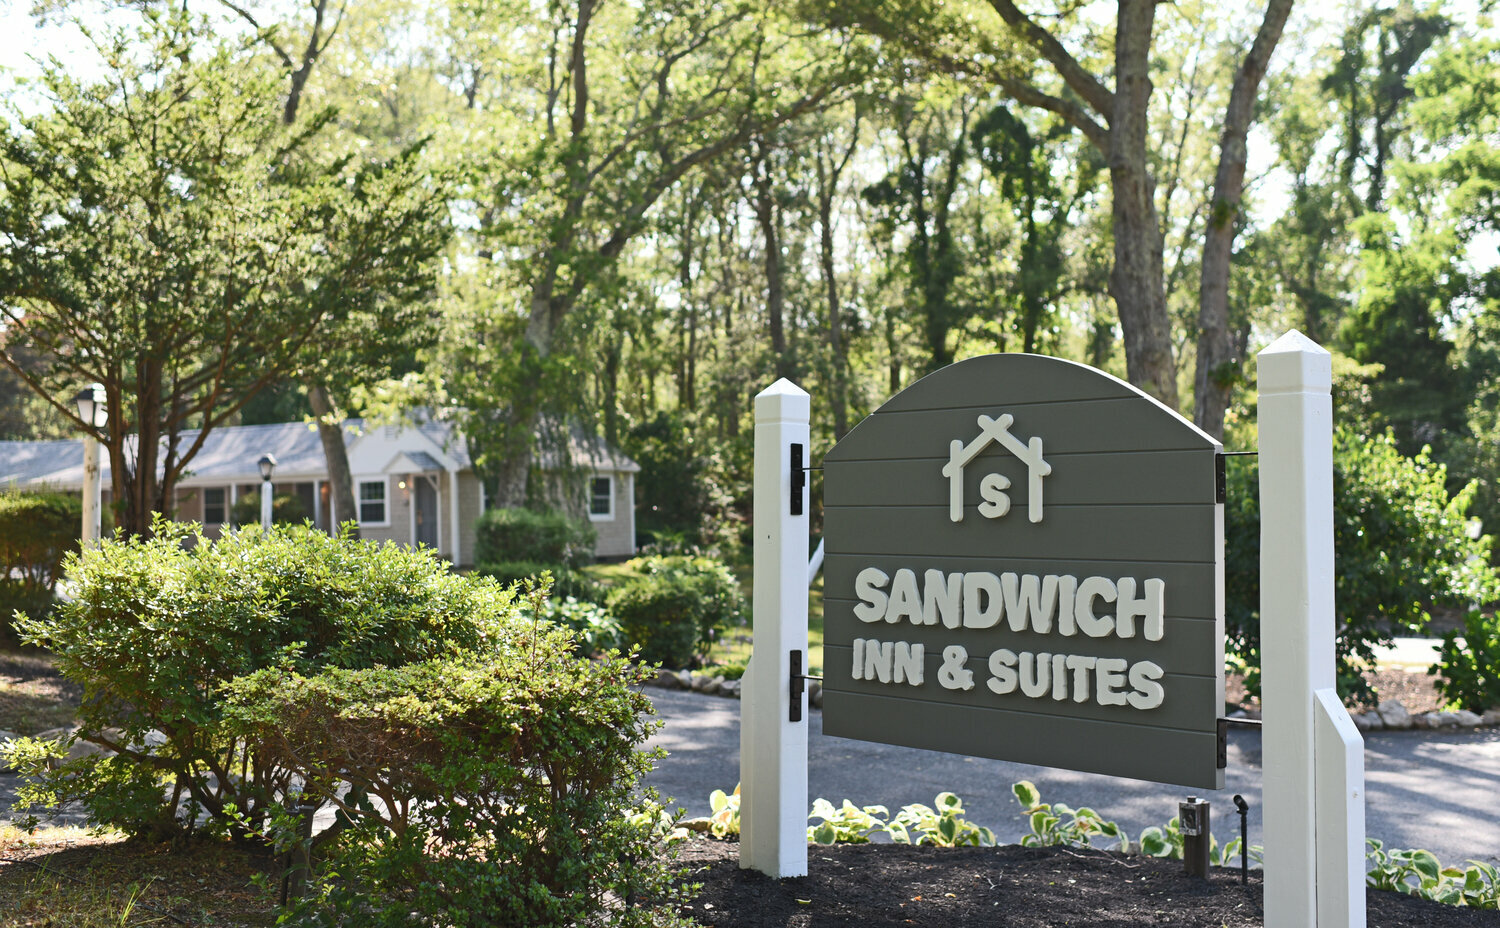 Photo of Sandwich Inn & suites, Sandwich, MA